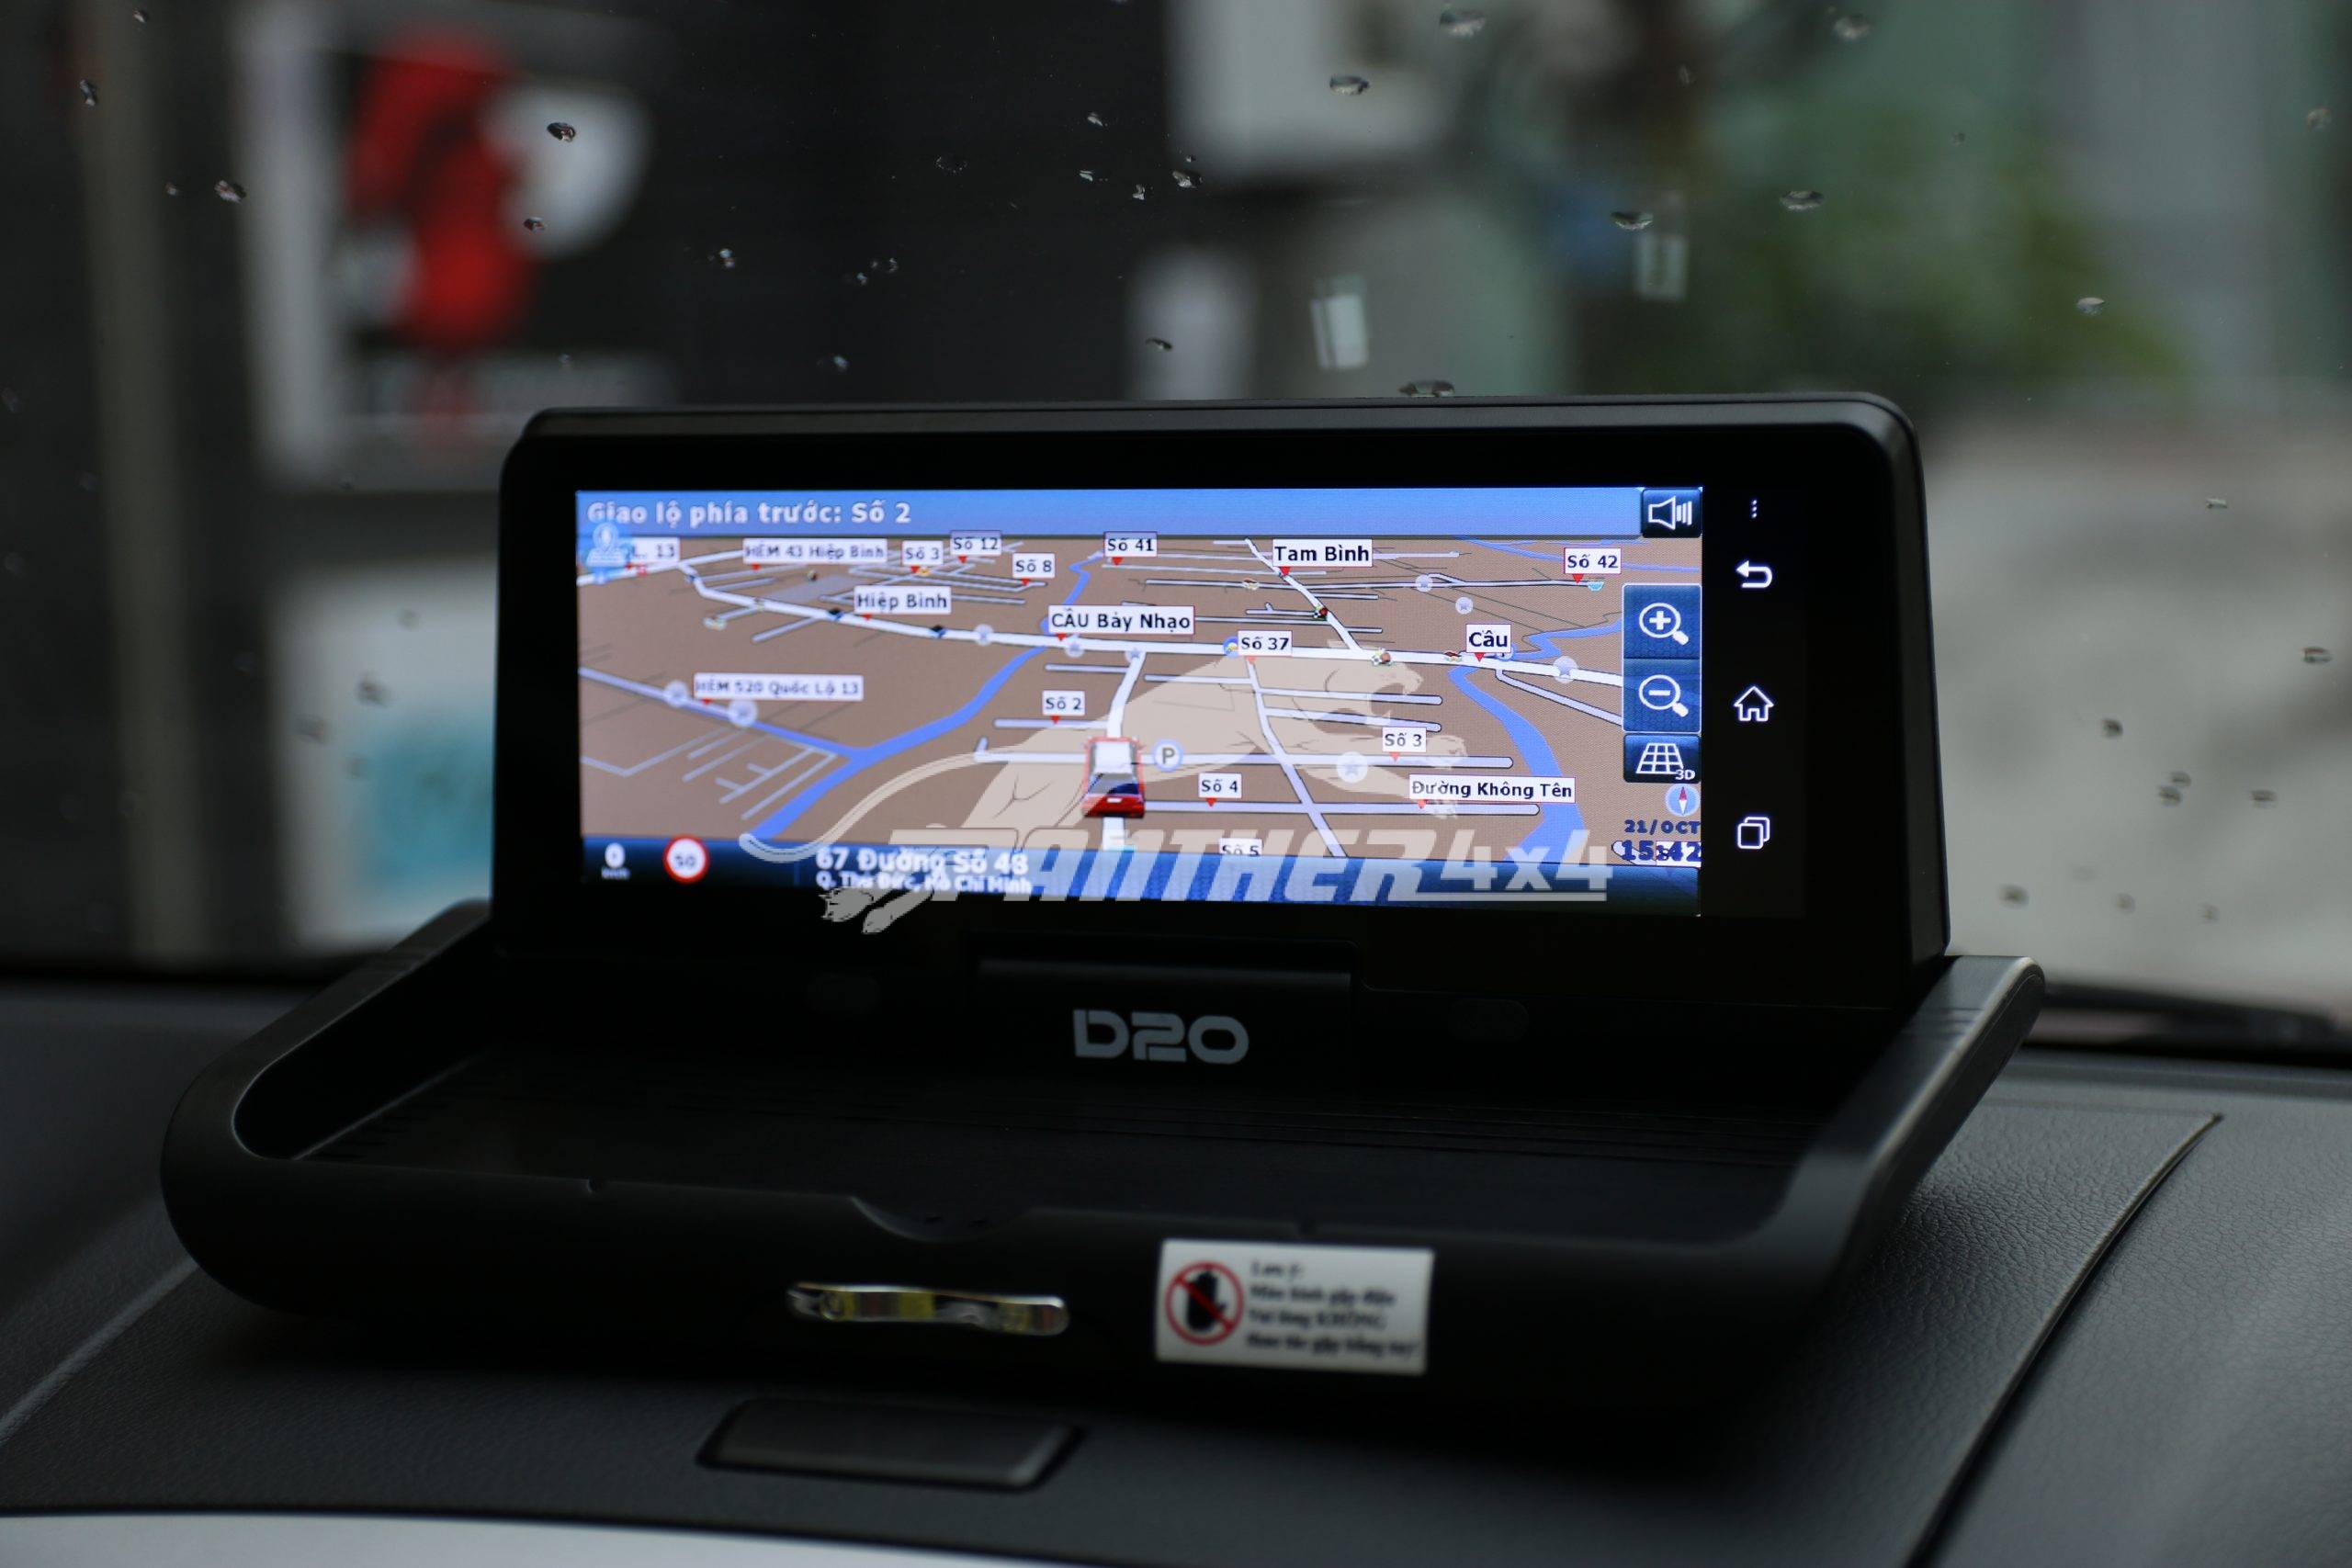 Kích hoạt tính năng ẩn hiển thị la bàn 3D xe Ford Ranger bạn sẽ không lo bị lạc đường khi không có một biển báo nào chỉ dẫn. Kích hoạt tính năng ẩn hiển thị la bàn 3D trên Ford mang lại những giải pháp cần thiết cho người điều khiển phương tiện.